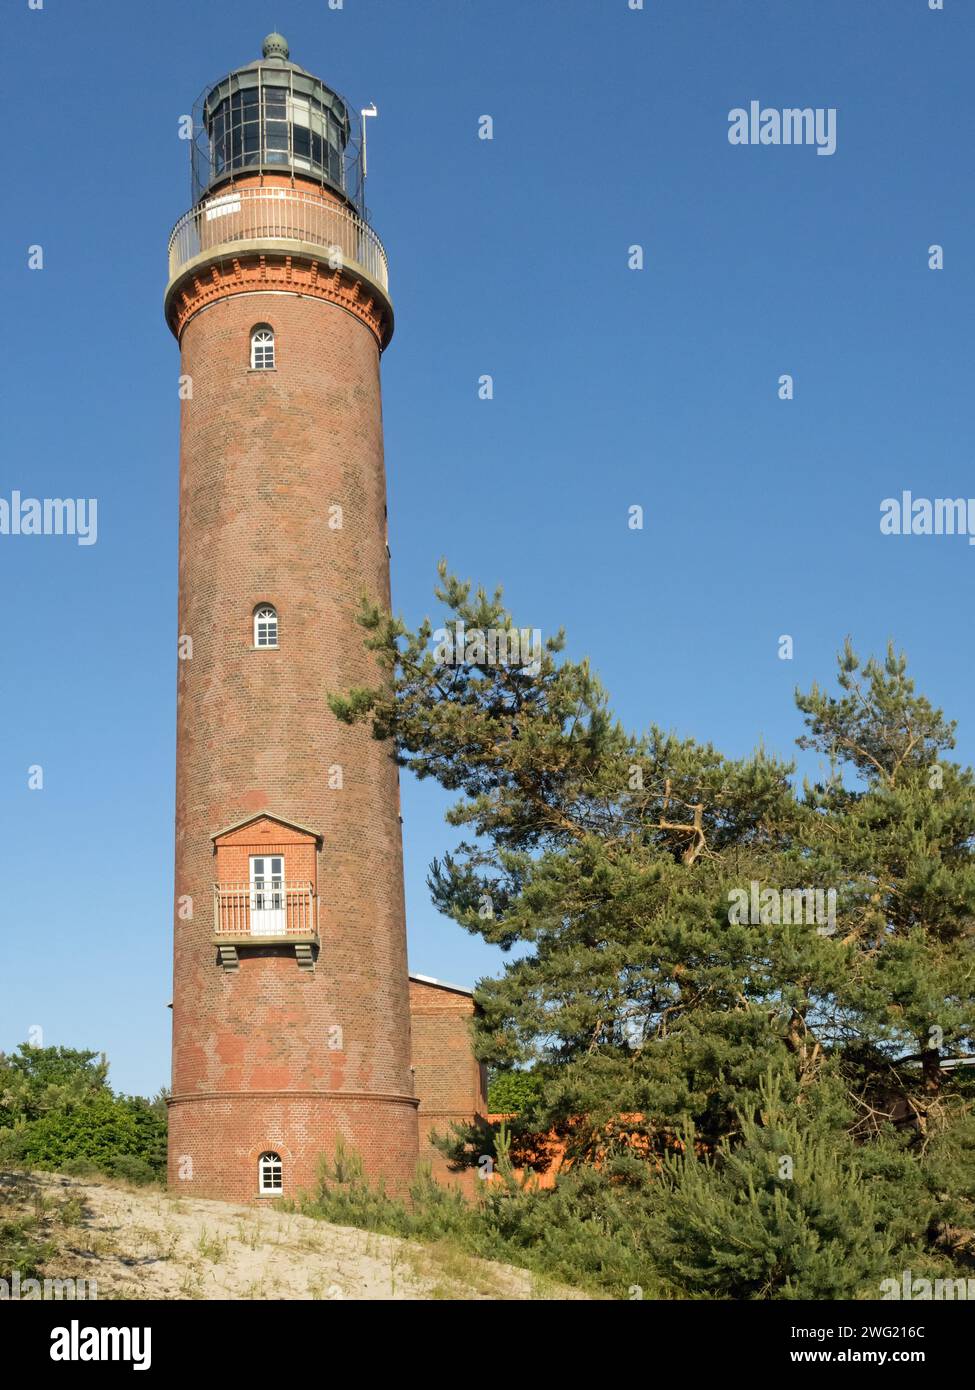 Vue extérieure du phare historique de Darßer Ort dans le parc national de la région de la lagune de Poméranie occidentale, Allemagne Banque D'Images